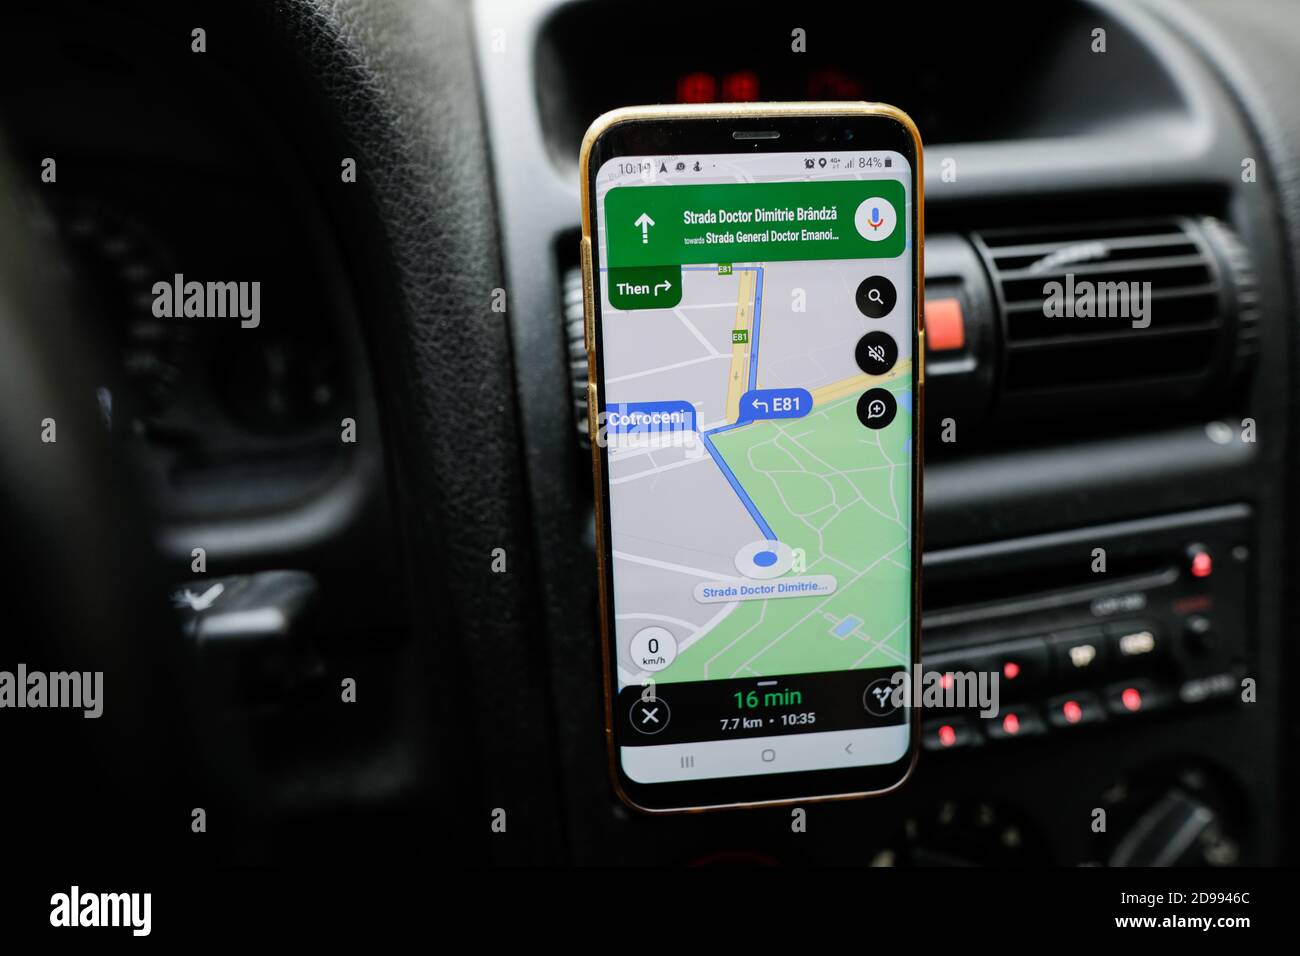 Google Maps im Auto nutzen - Smartphones und Zubehör 